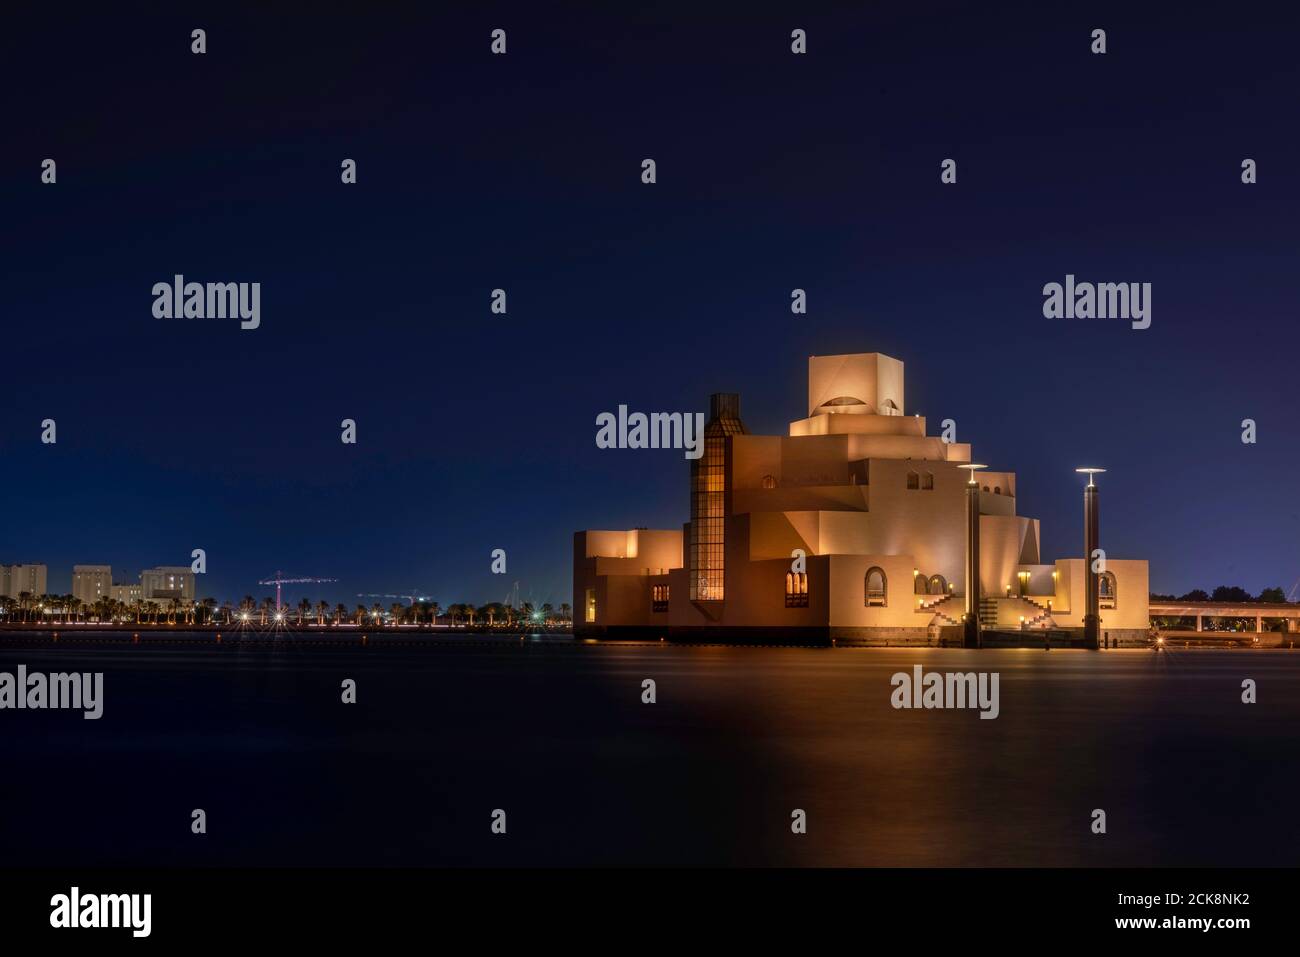 Doha, Katar - 26. August 2020: Nachtaufnahme von Doha, Katar Architektur Wahrzeichen, Museum für Islamische Kunst auf Nacht Skyline Hintergrund gesetzt Stockfoto